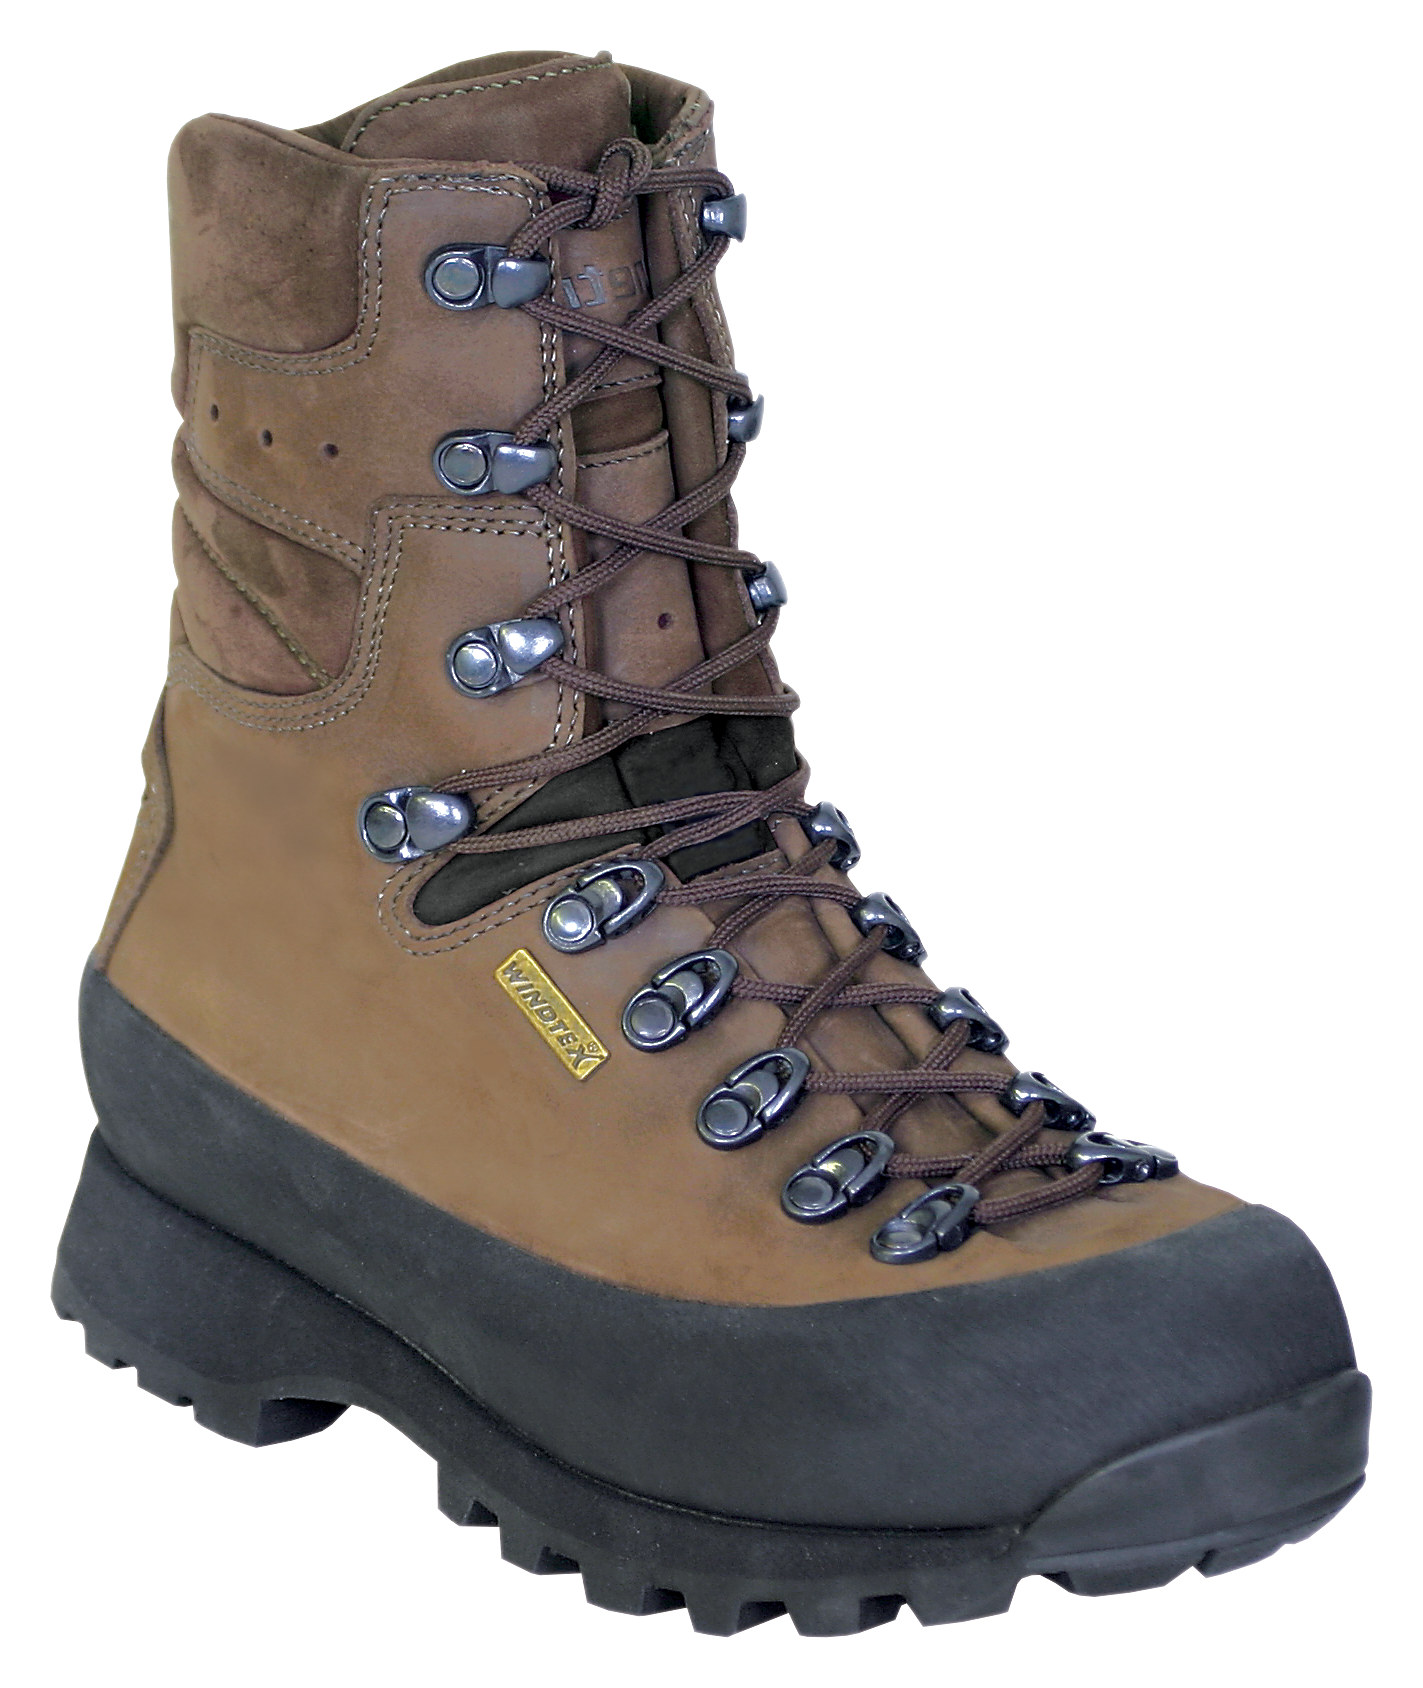 Kenetrek Hiker Waterproof Hiking Boots for Ladies - Brown -  8 5M